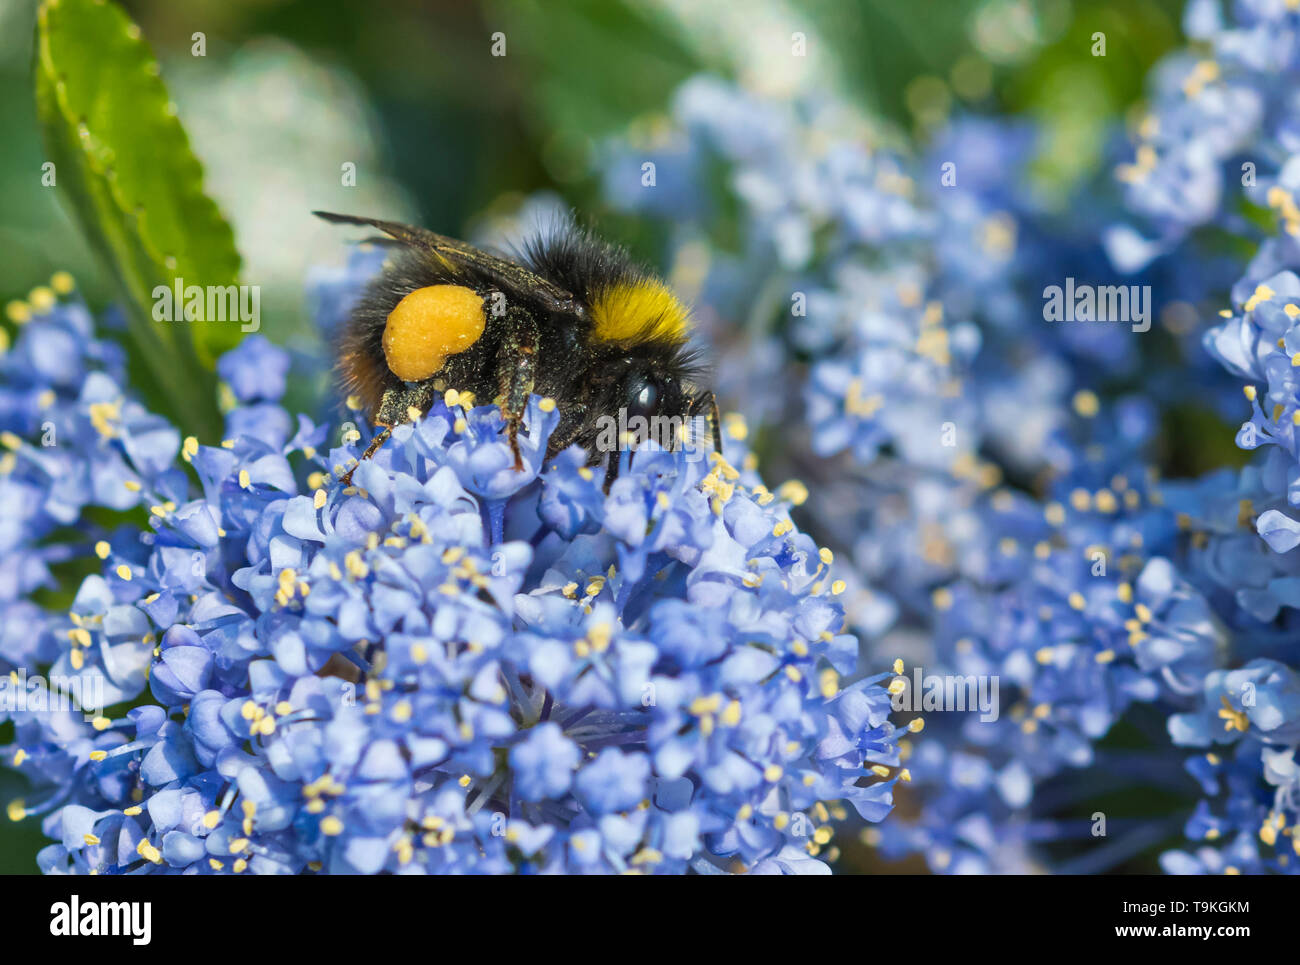 Bombus pratorum travailleur (Début Bumblebee) la collecte du pollen d'un lilas californien (Ceanothus) au printemps (mai) dans le West Sussex, UK.Bee. Les bourdons. Banque D'Images